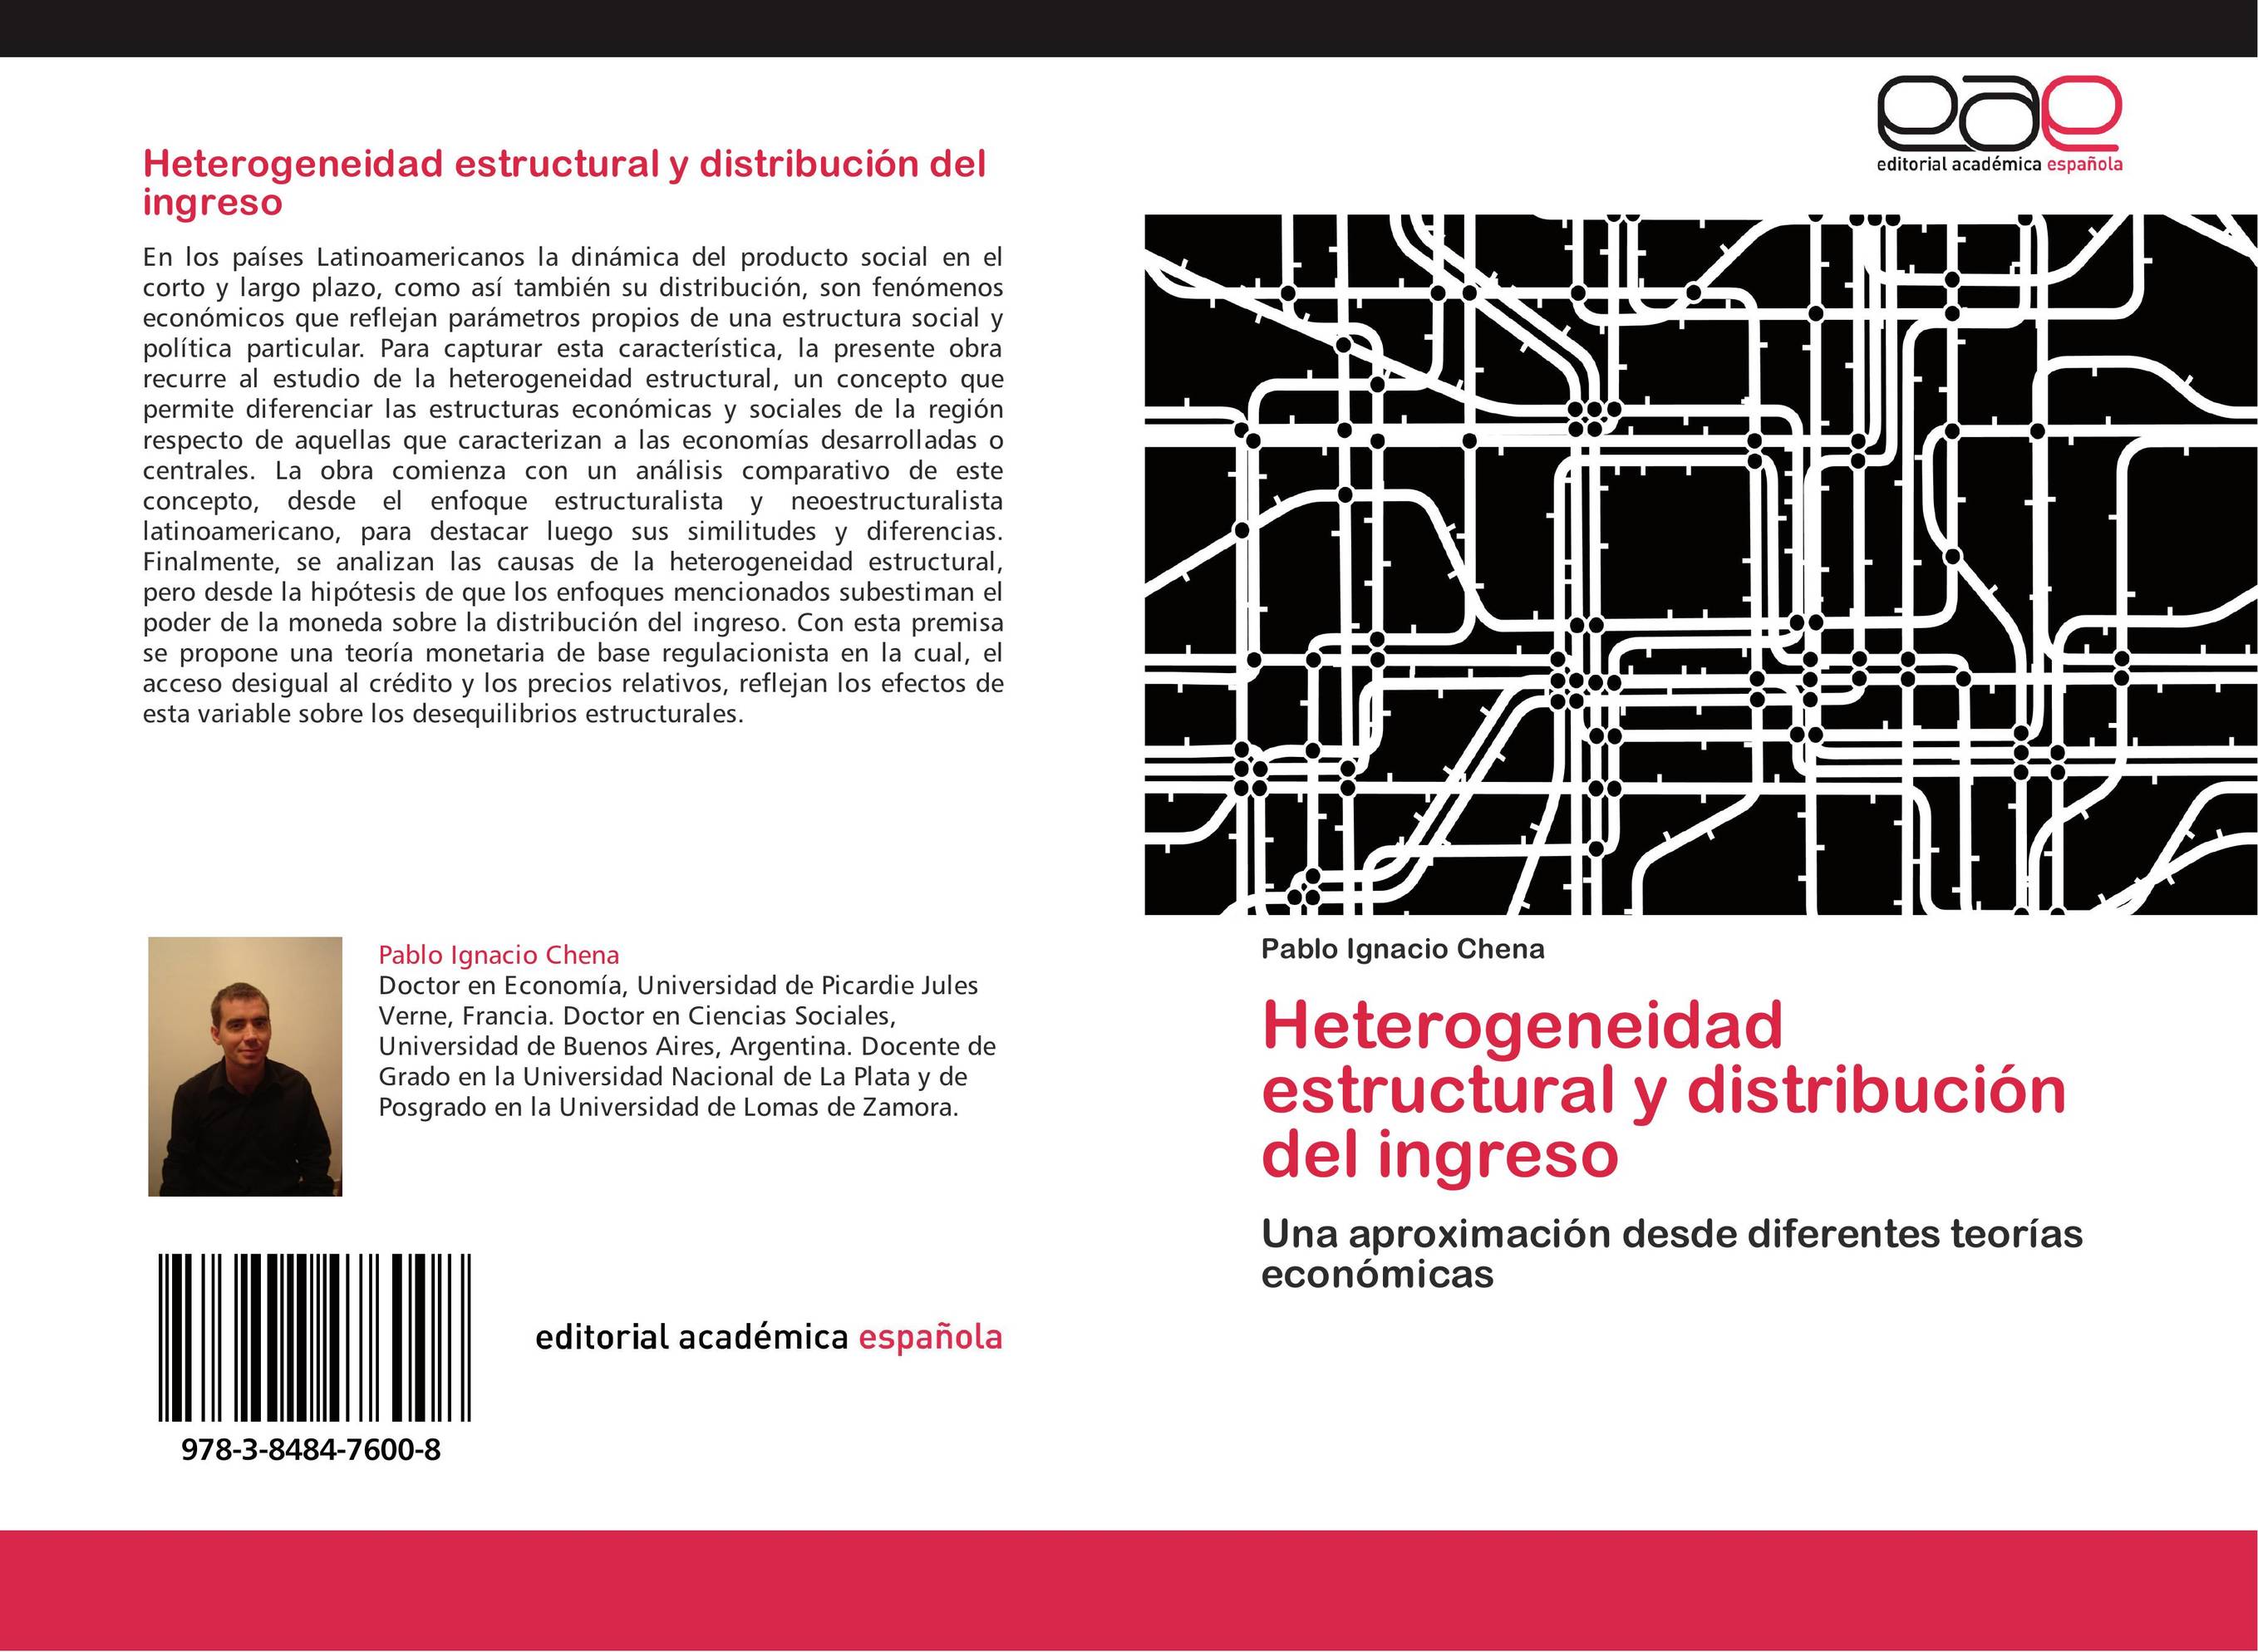 Heterogeneidad estructural y distribución del ingreso